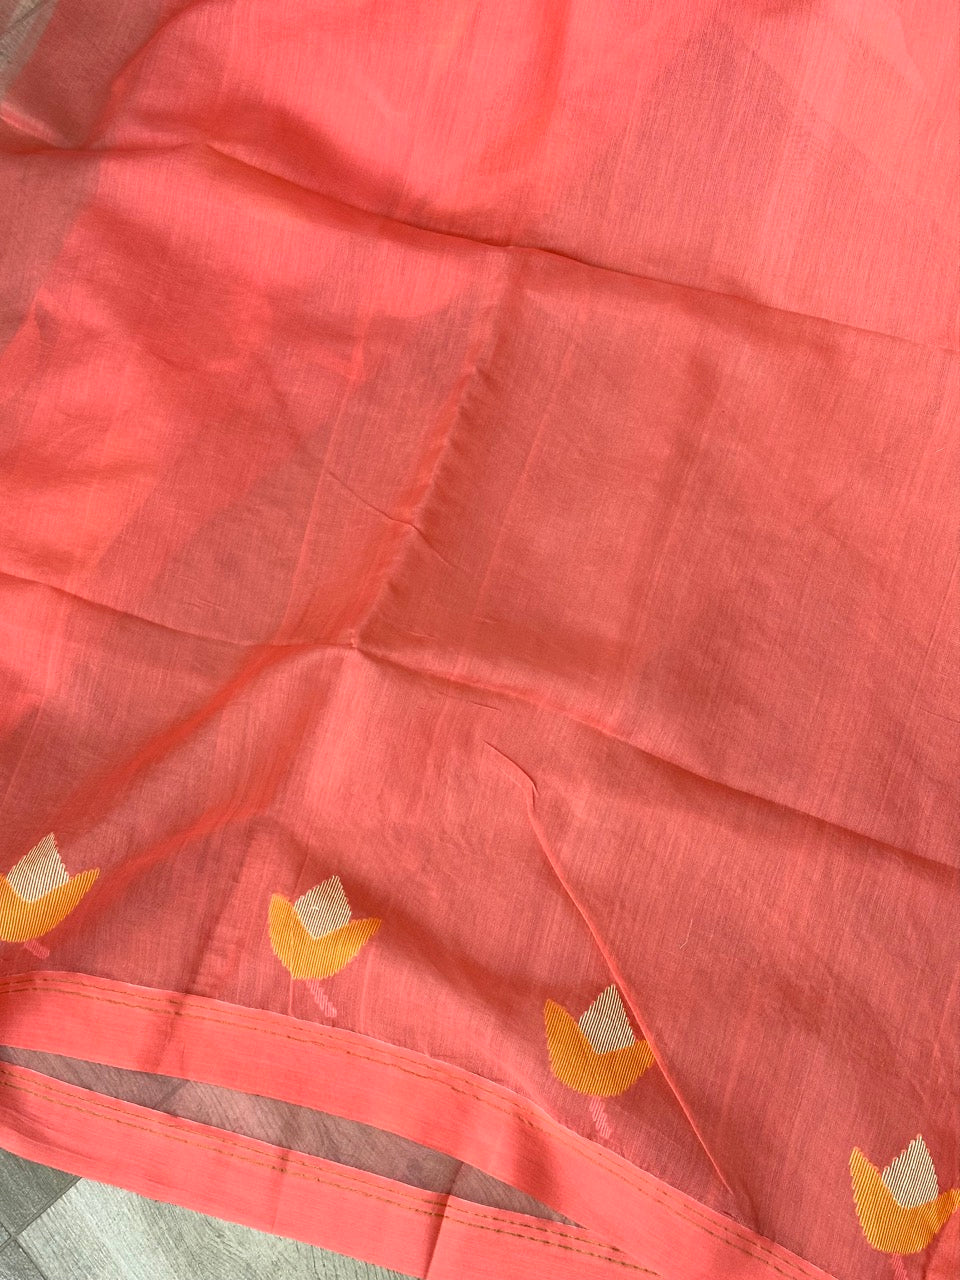 Peach - Handloom Organza Saree with Jamdani weaving